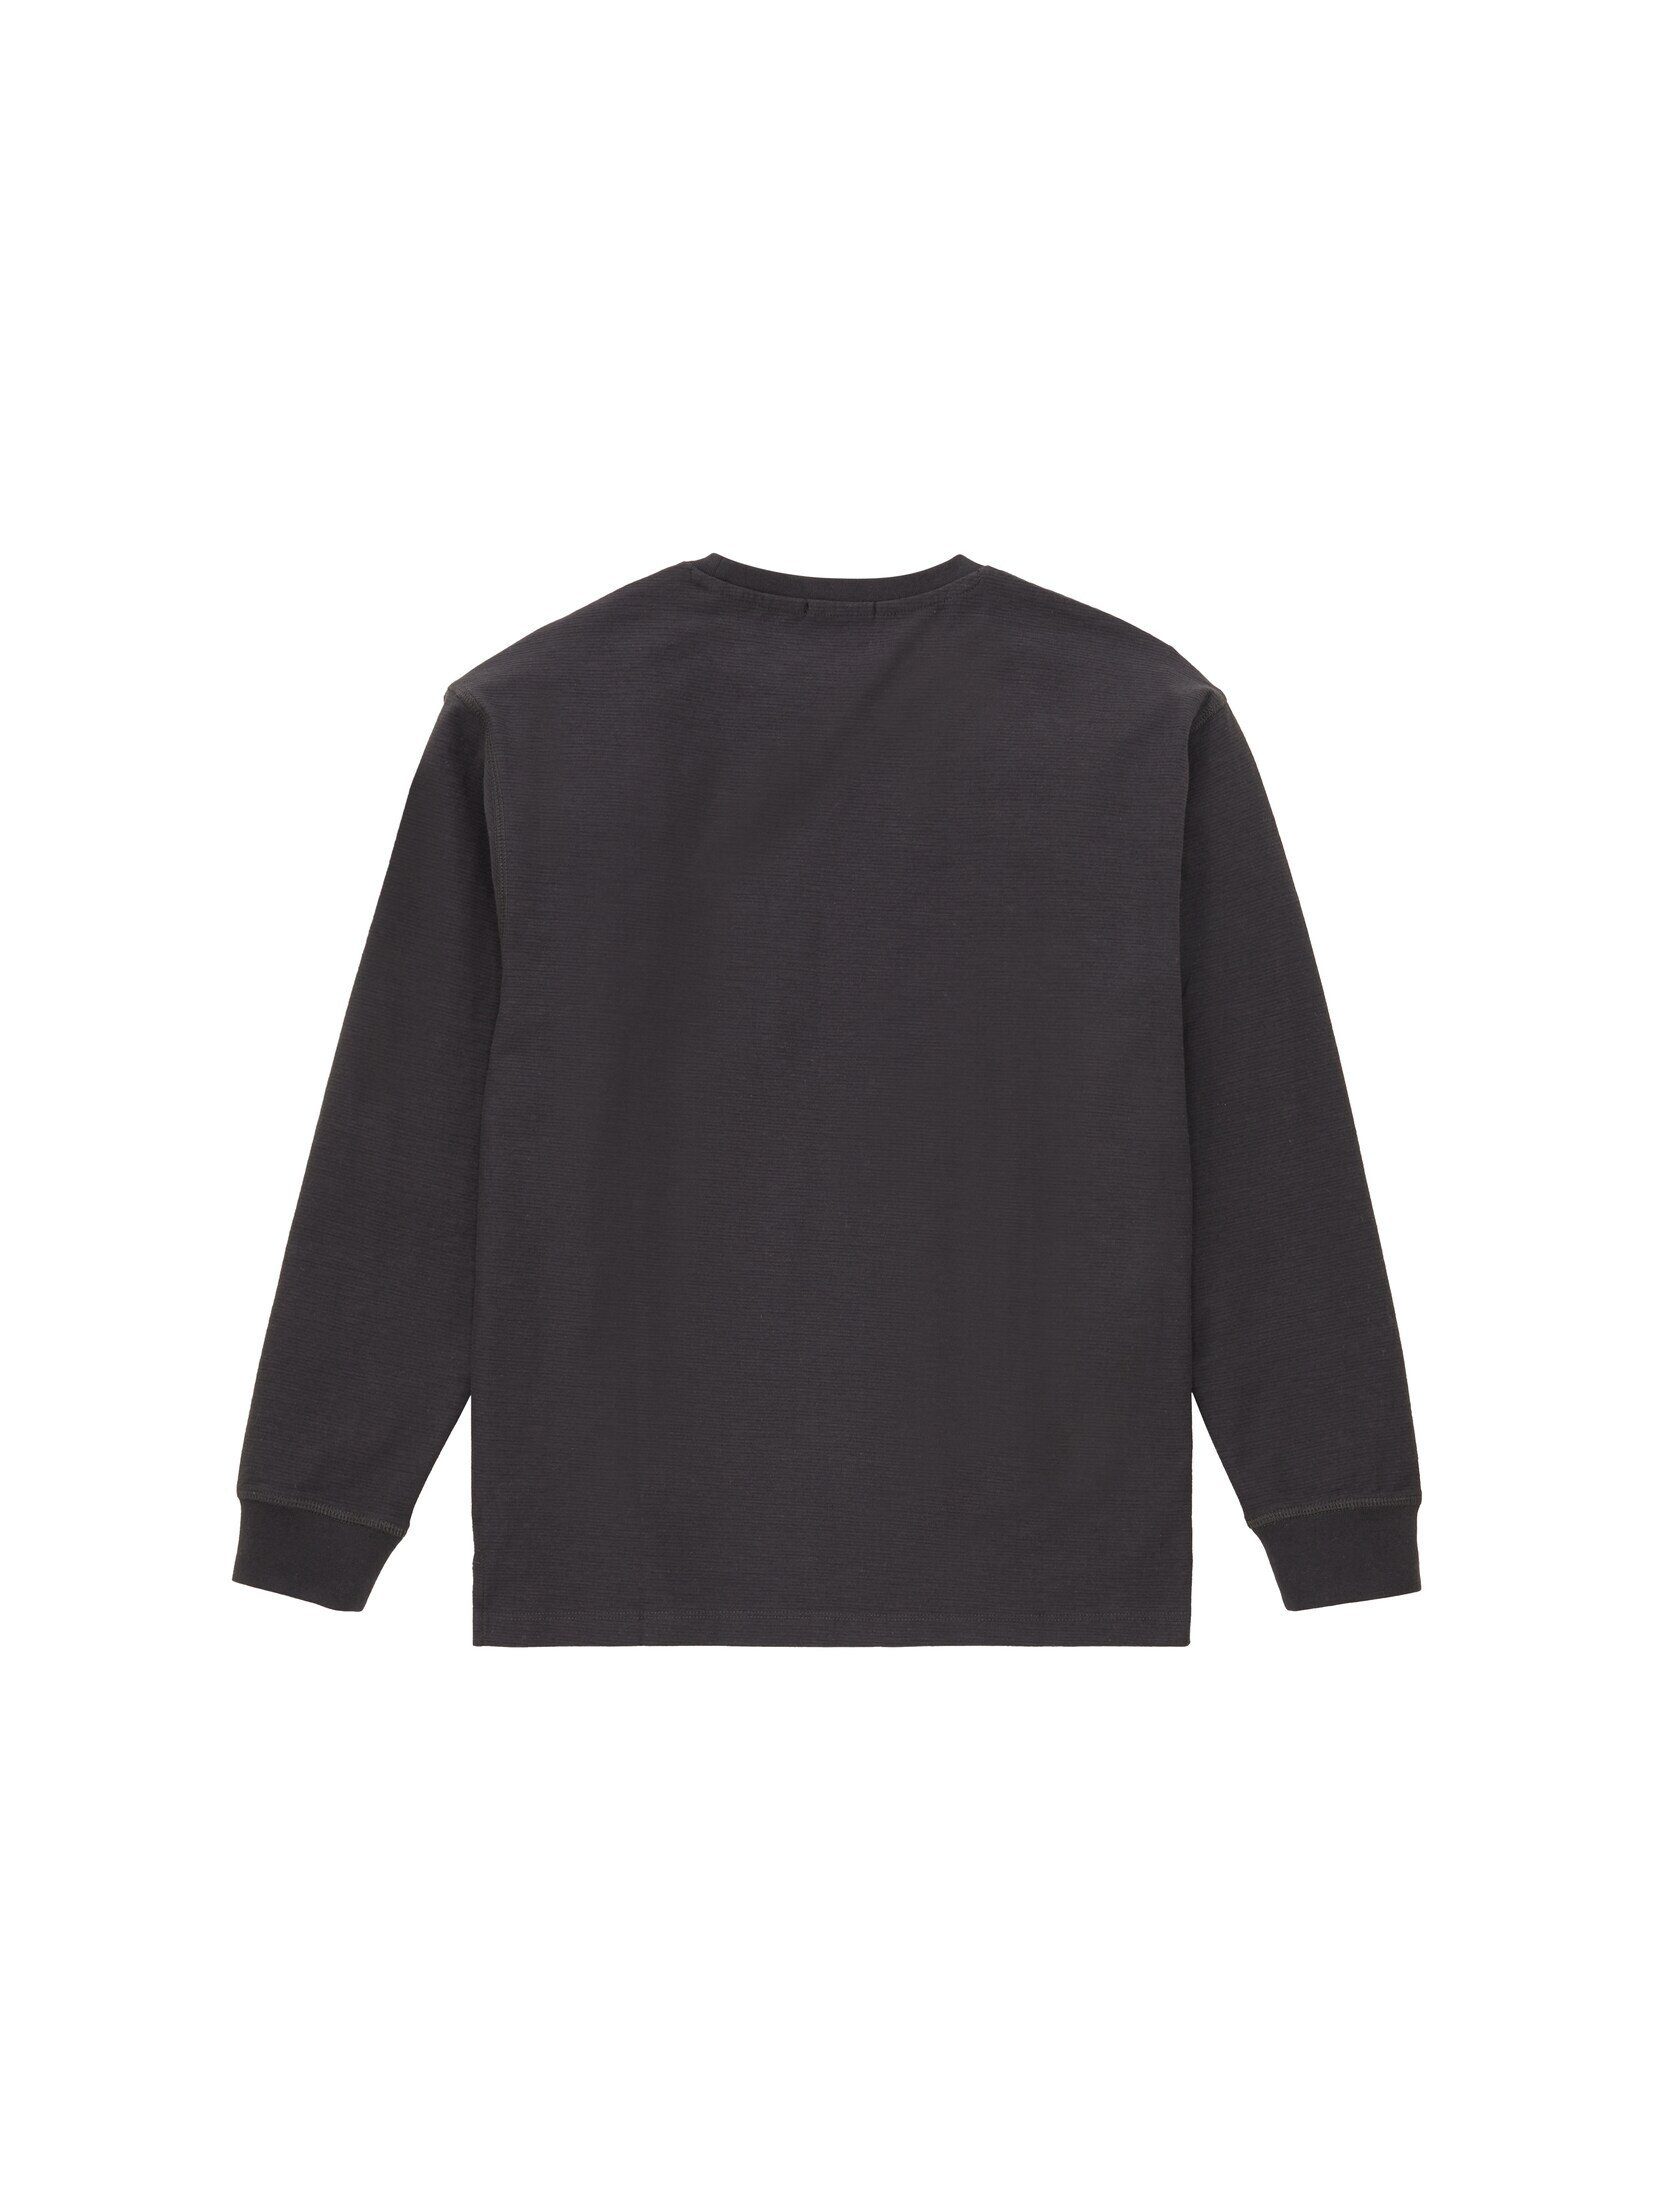 TAILOR TOM Langarmshirt Oversized grey T-Shirt coal